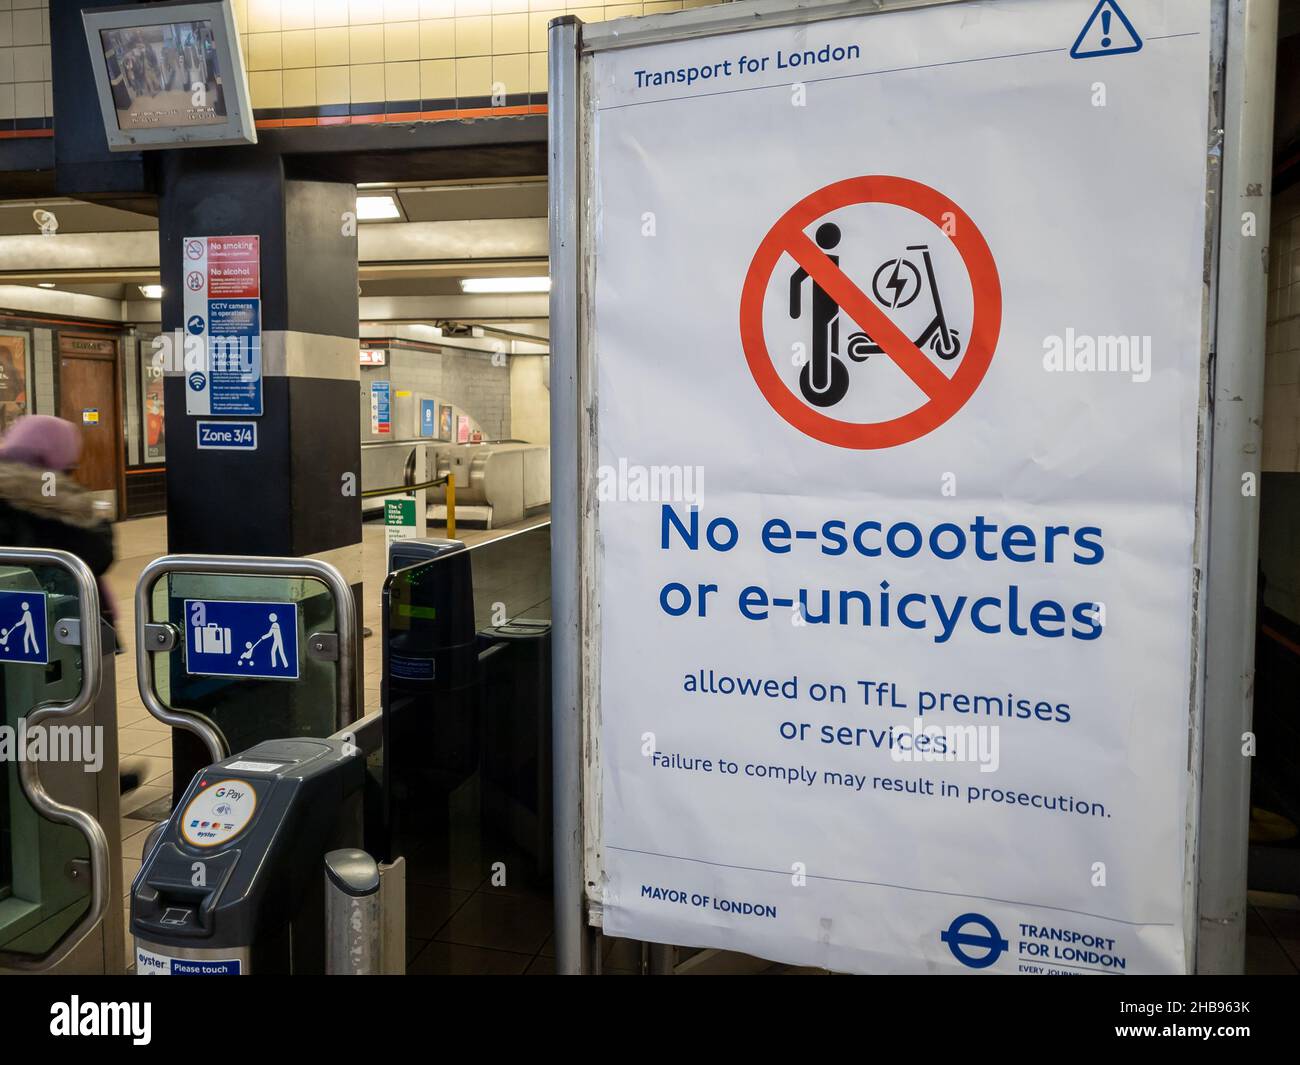 London. UK-12.14.2021. Ein Hinweis in der Londoner U-Bahn, der E-Scooter und E-Einräder nach einer Reihe von Bränden dieser Gegenstände verbietet. Stockfoto